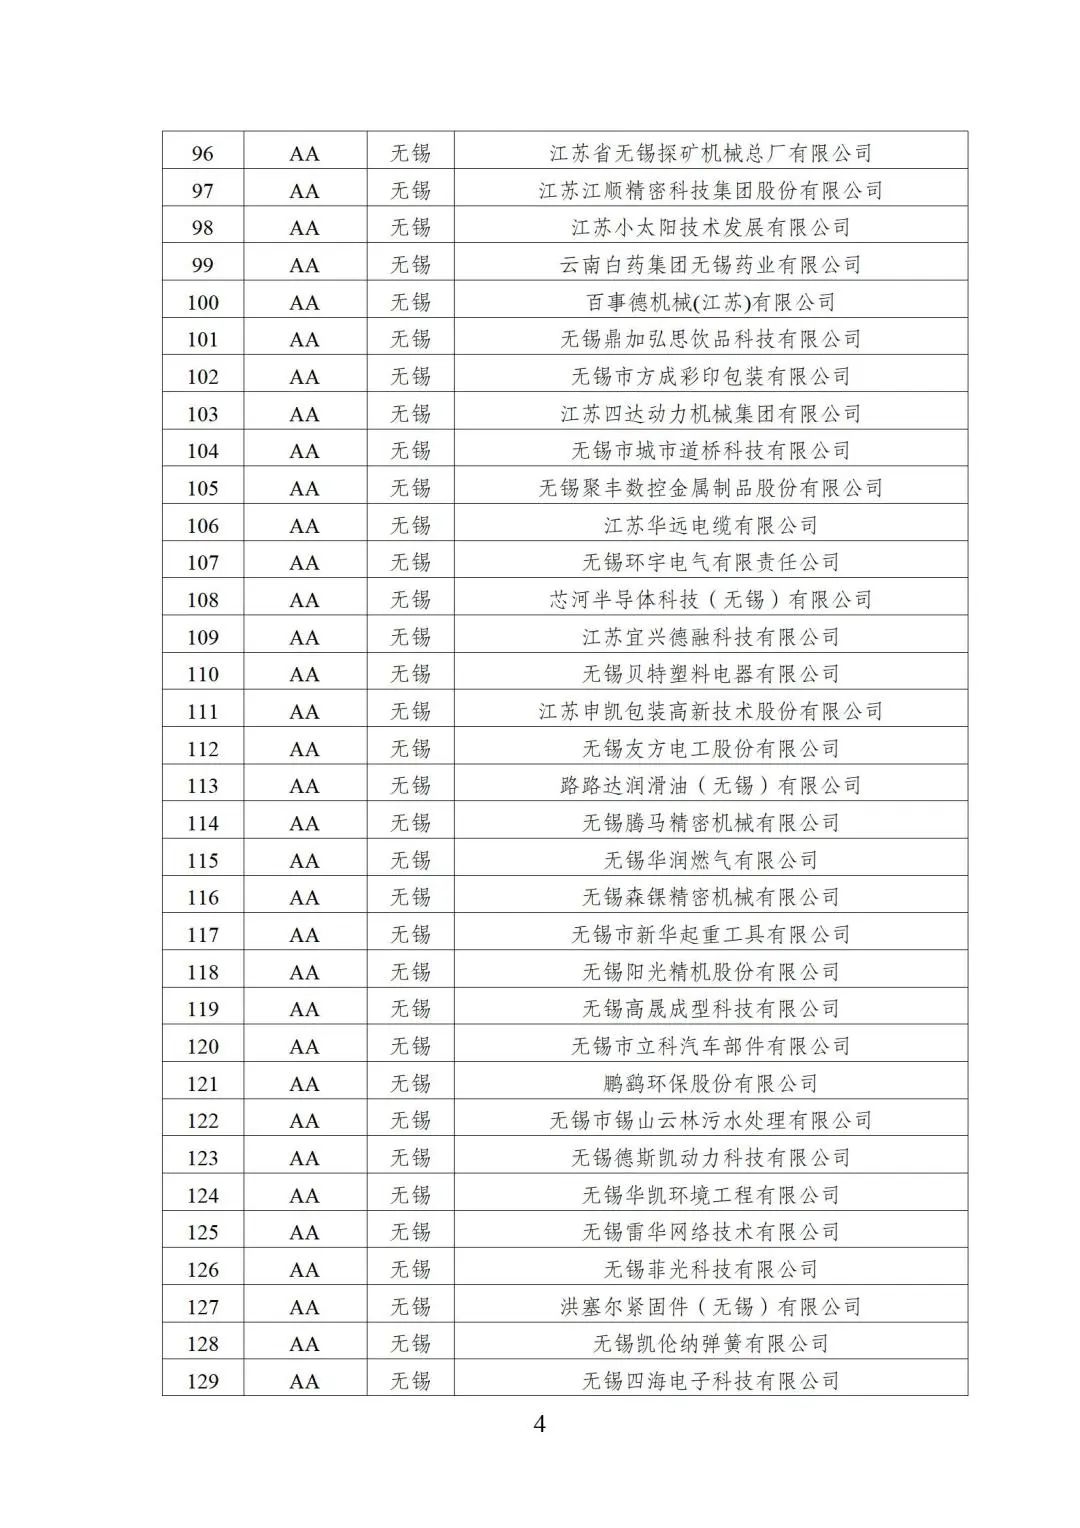 2022年江苏省两化融合管理体系贯标示范企业培育对象名单4.jpg